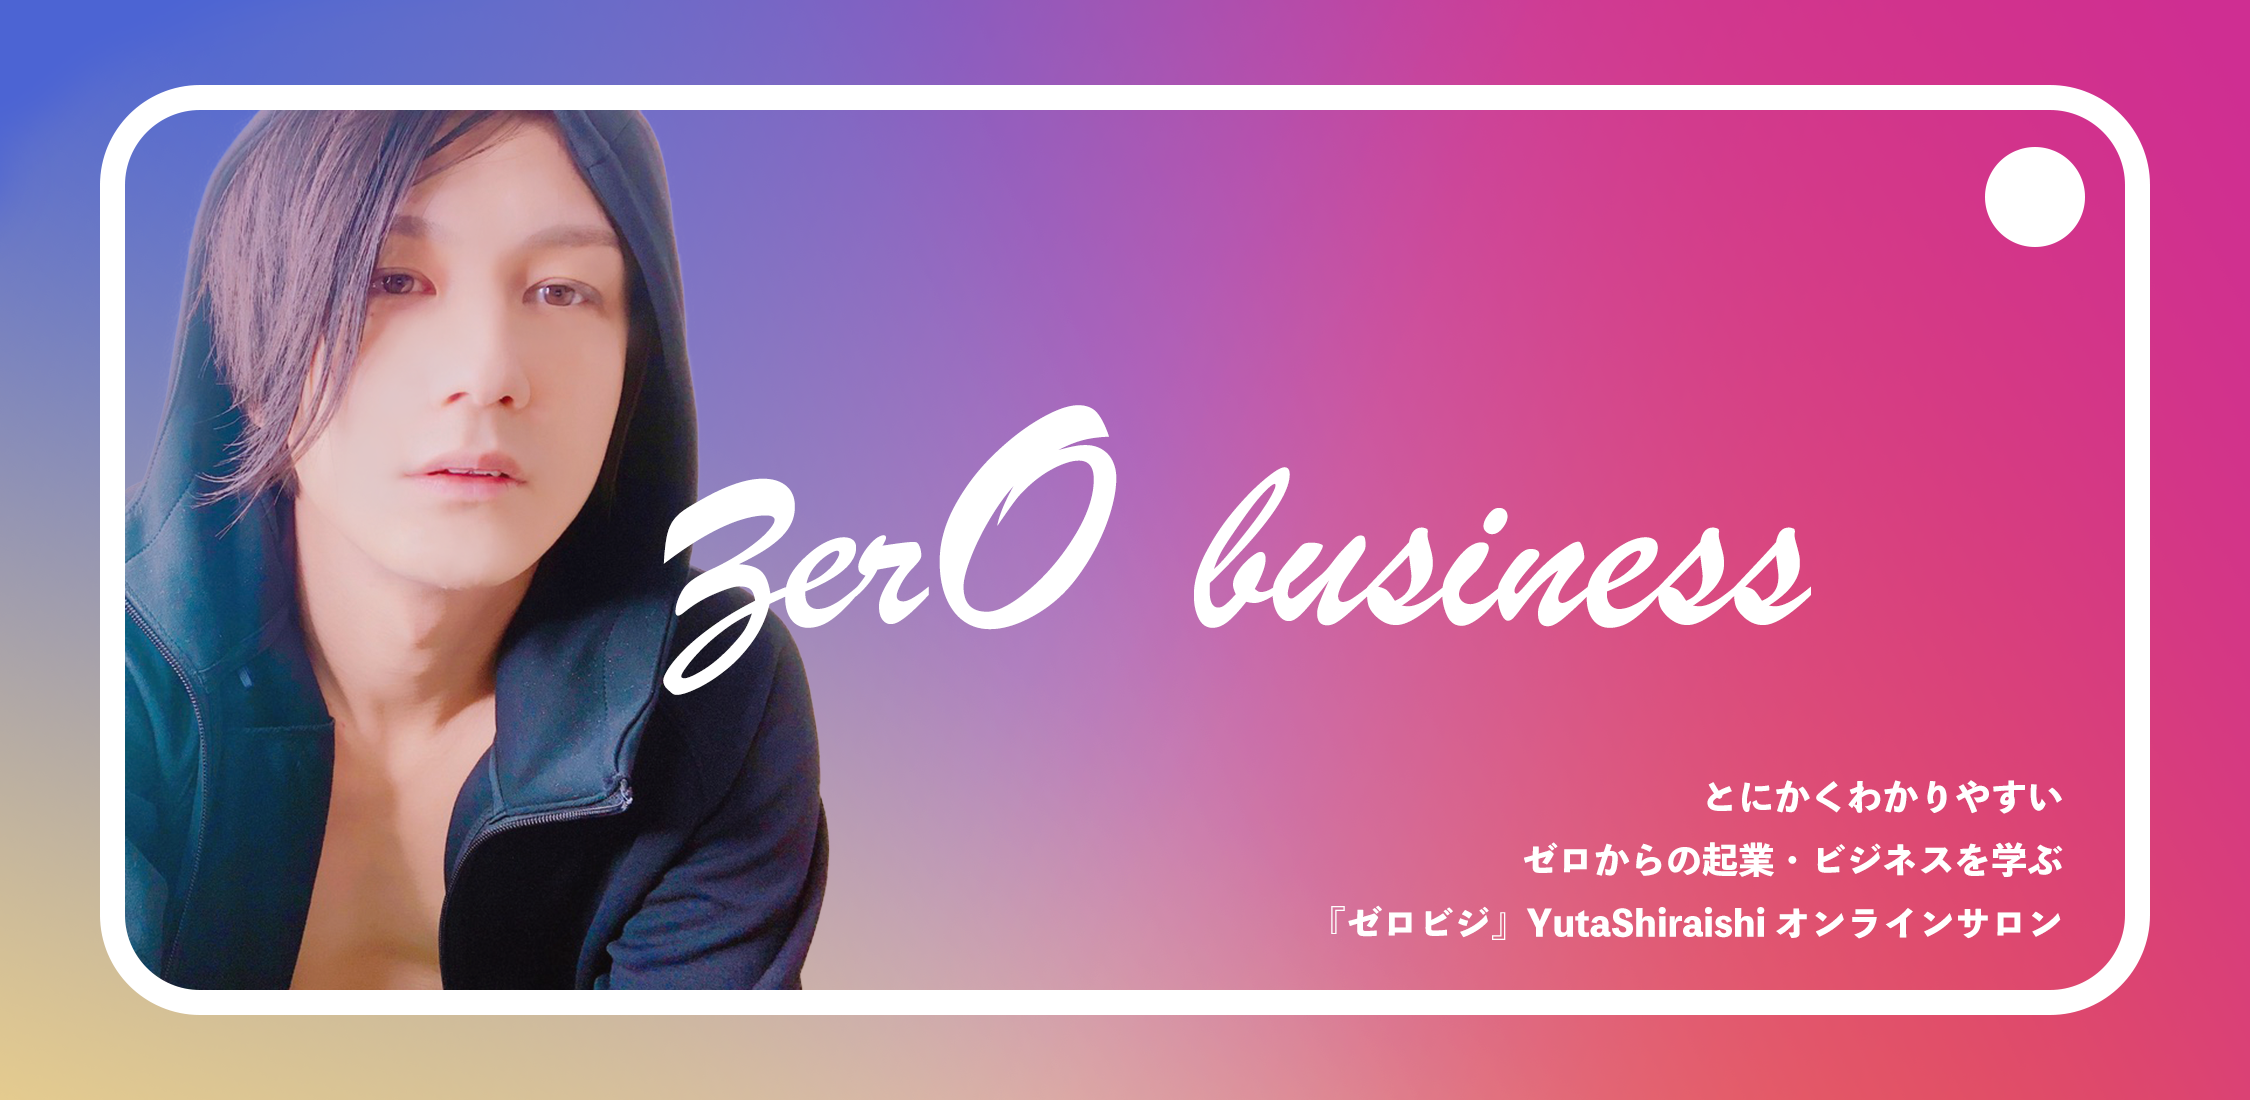 【リリース情報】ゼロからの起業・ビジネスを学ぶ 『ゼロビジ』YutaShiraishiオンラインサロン